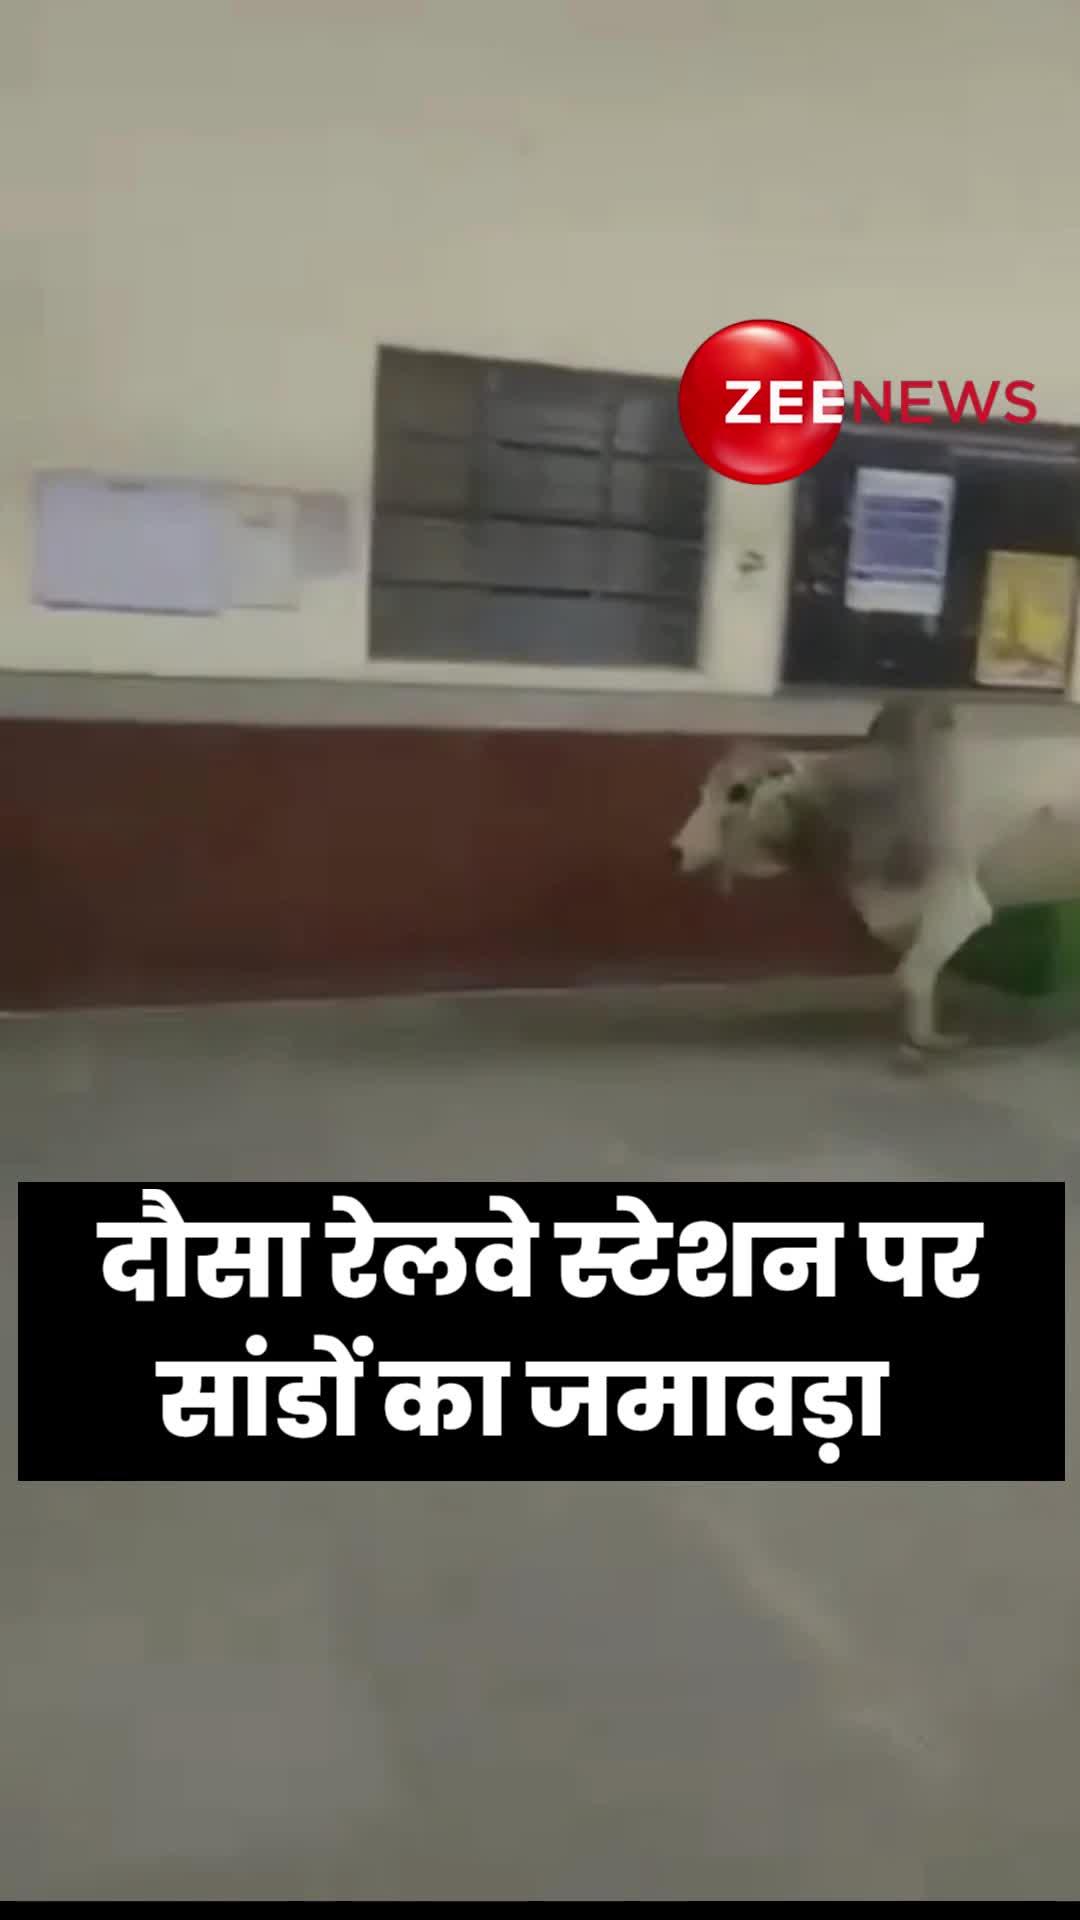 Viral Video: इस रेलवे स्टेशन पर सांडों का कब्जा, डर के मारे जान बचाते दिखे लोग